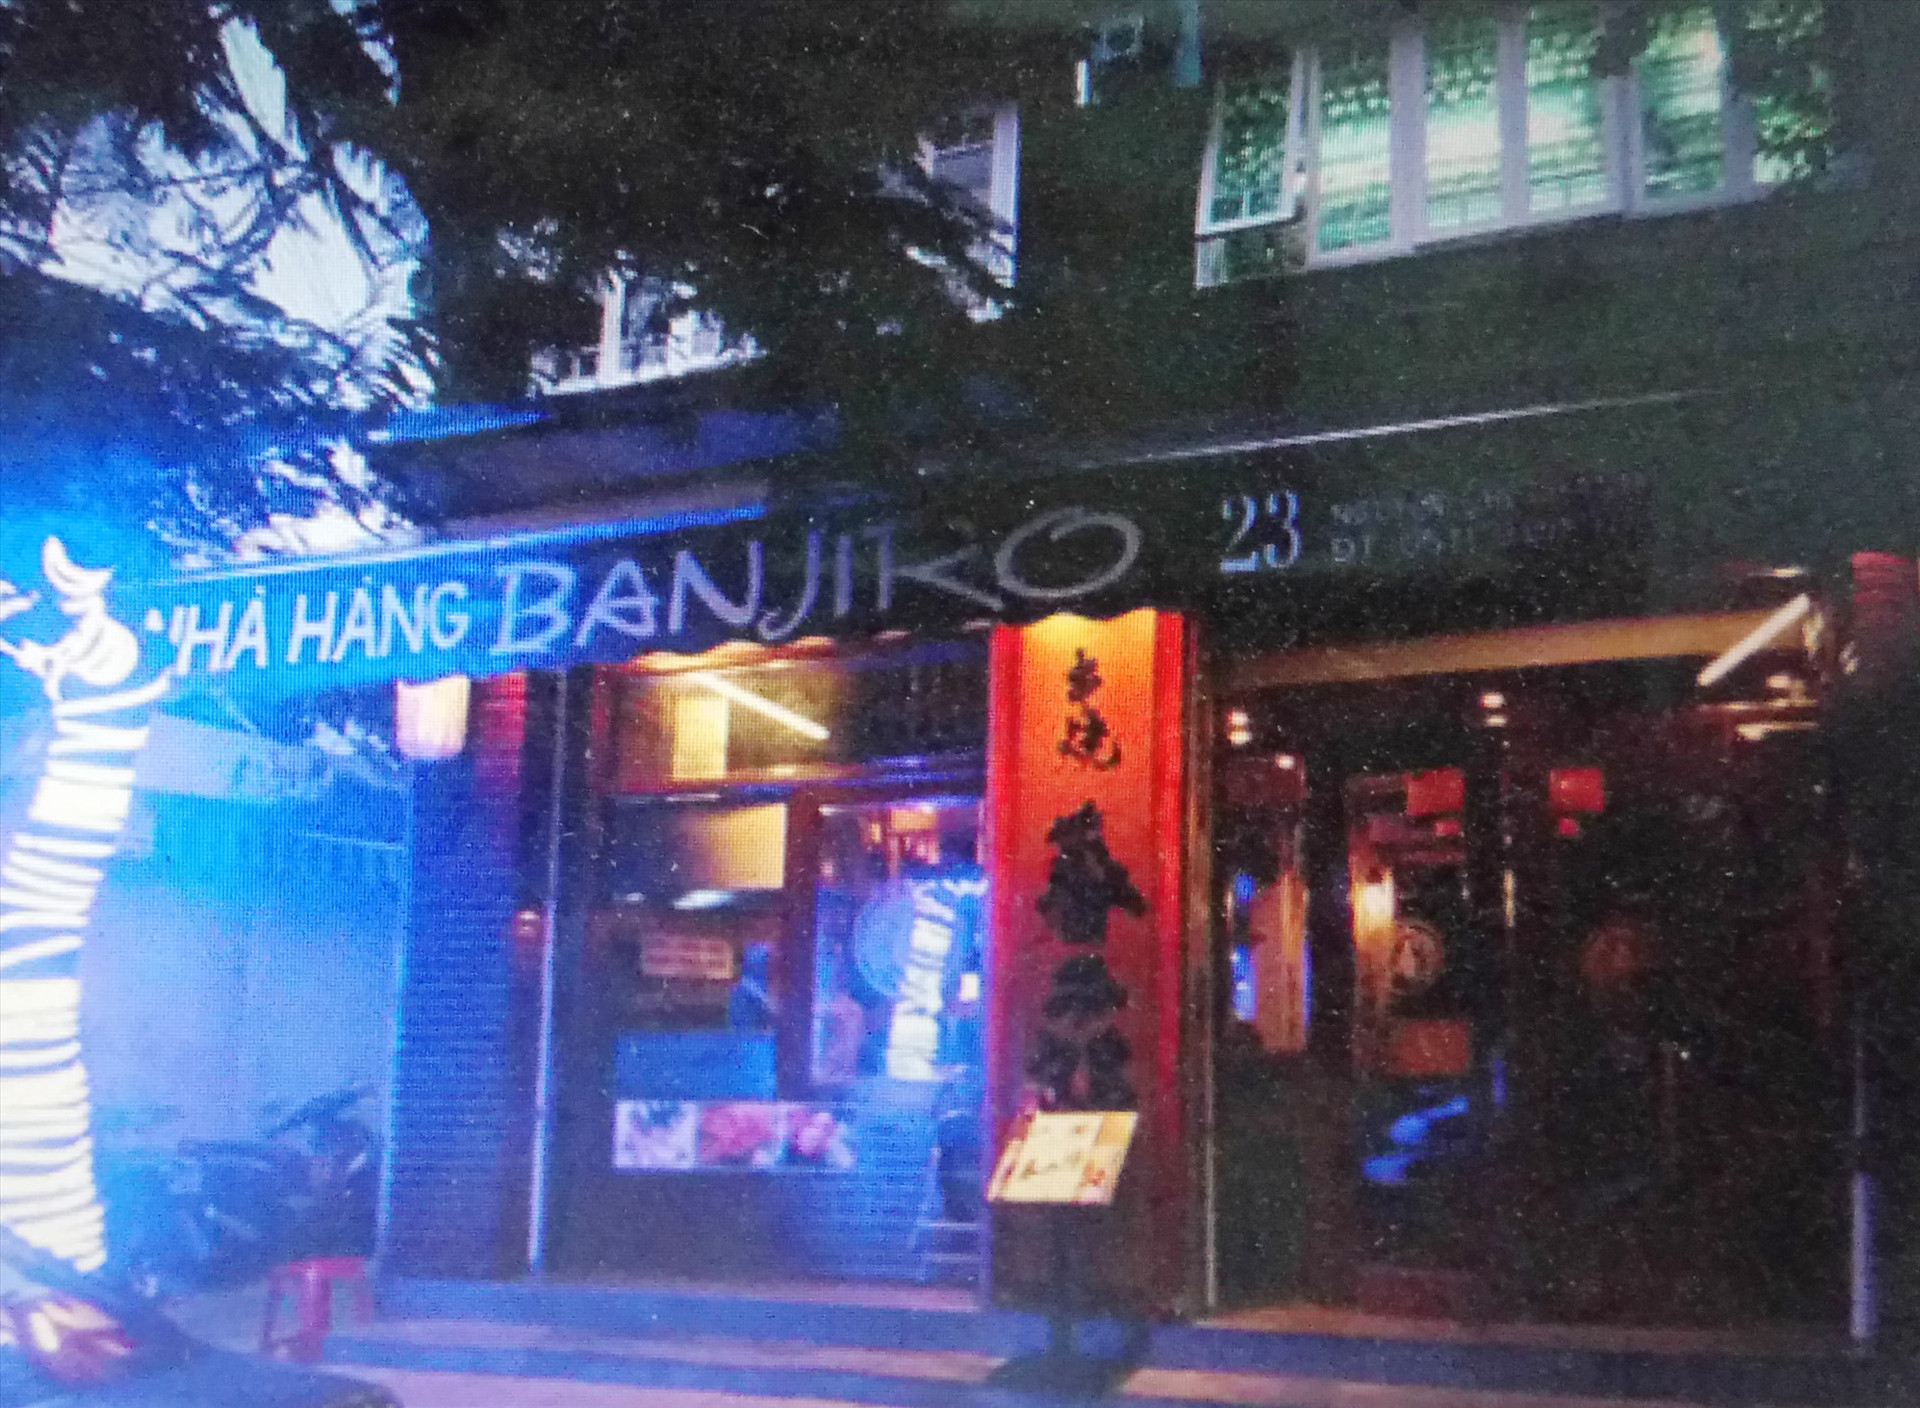 Nhà hàng Banjiro tại đường Nguyễn Chí Thanh, TP. Đà Nẵng.